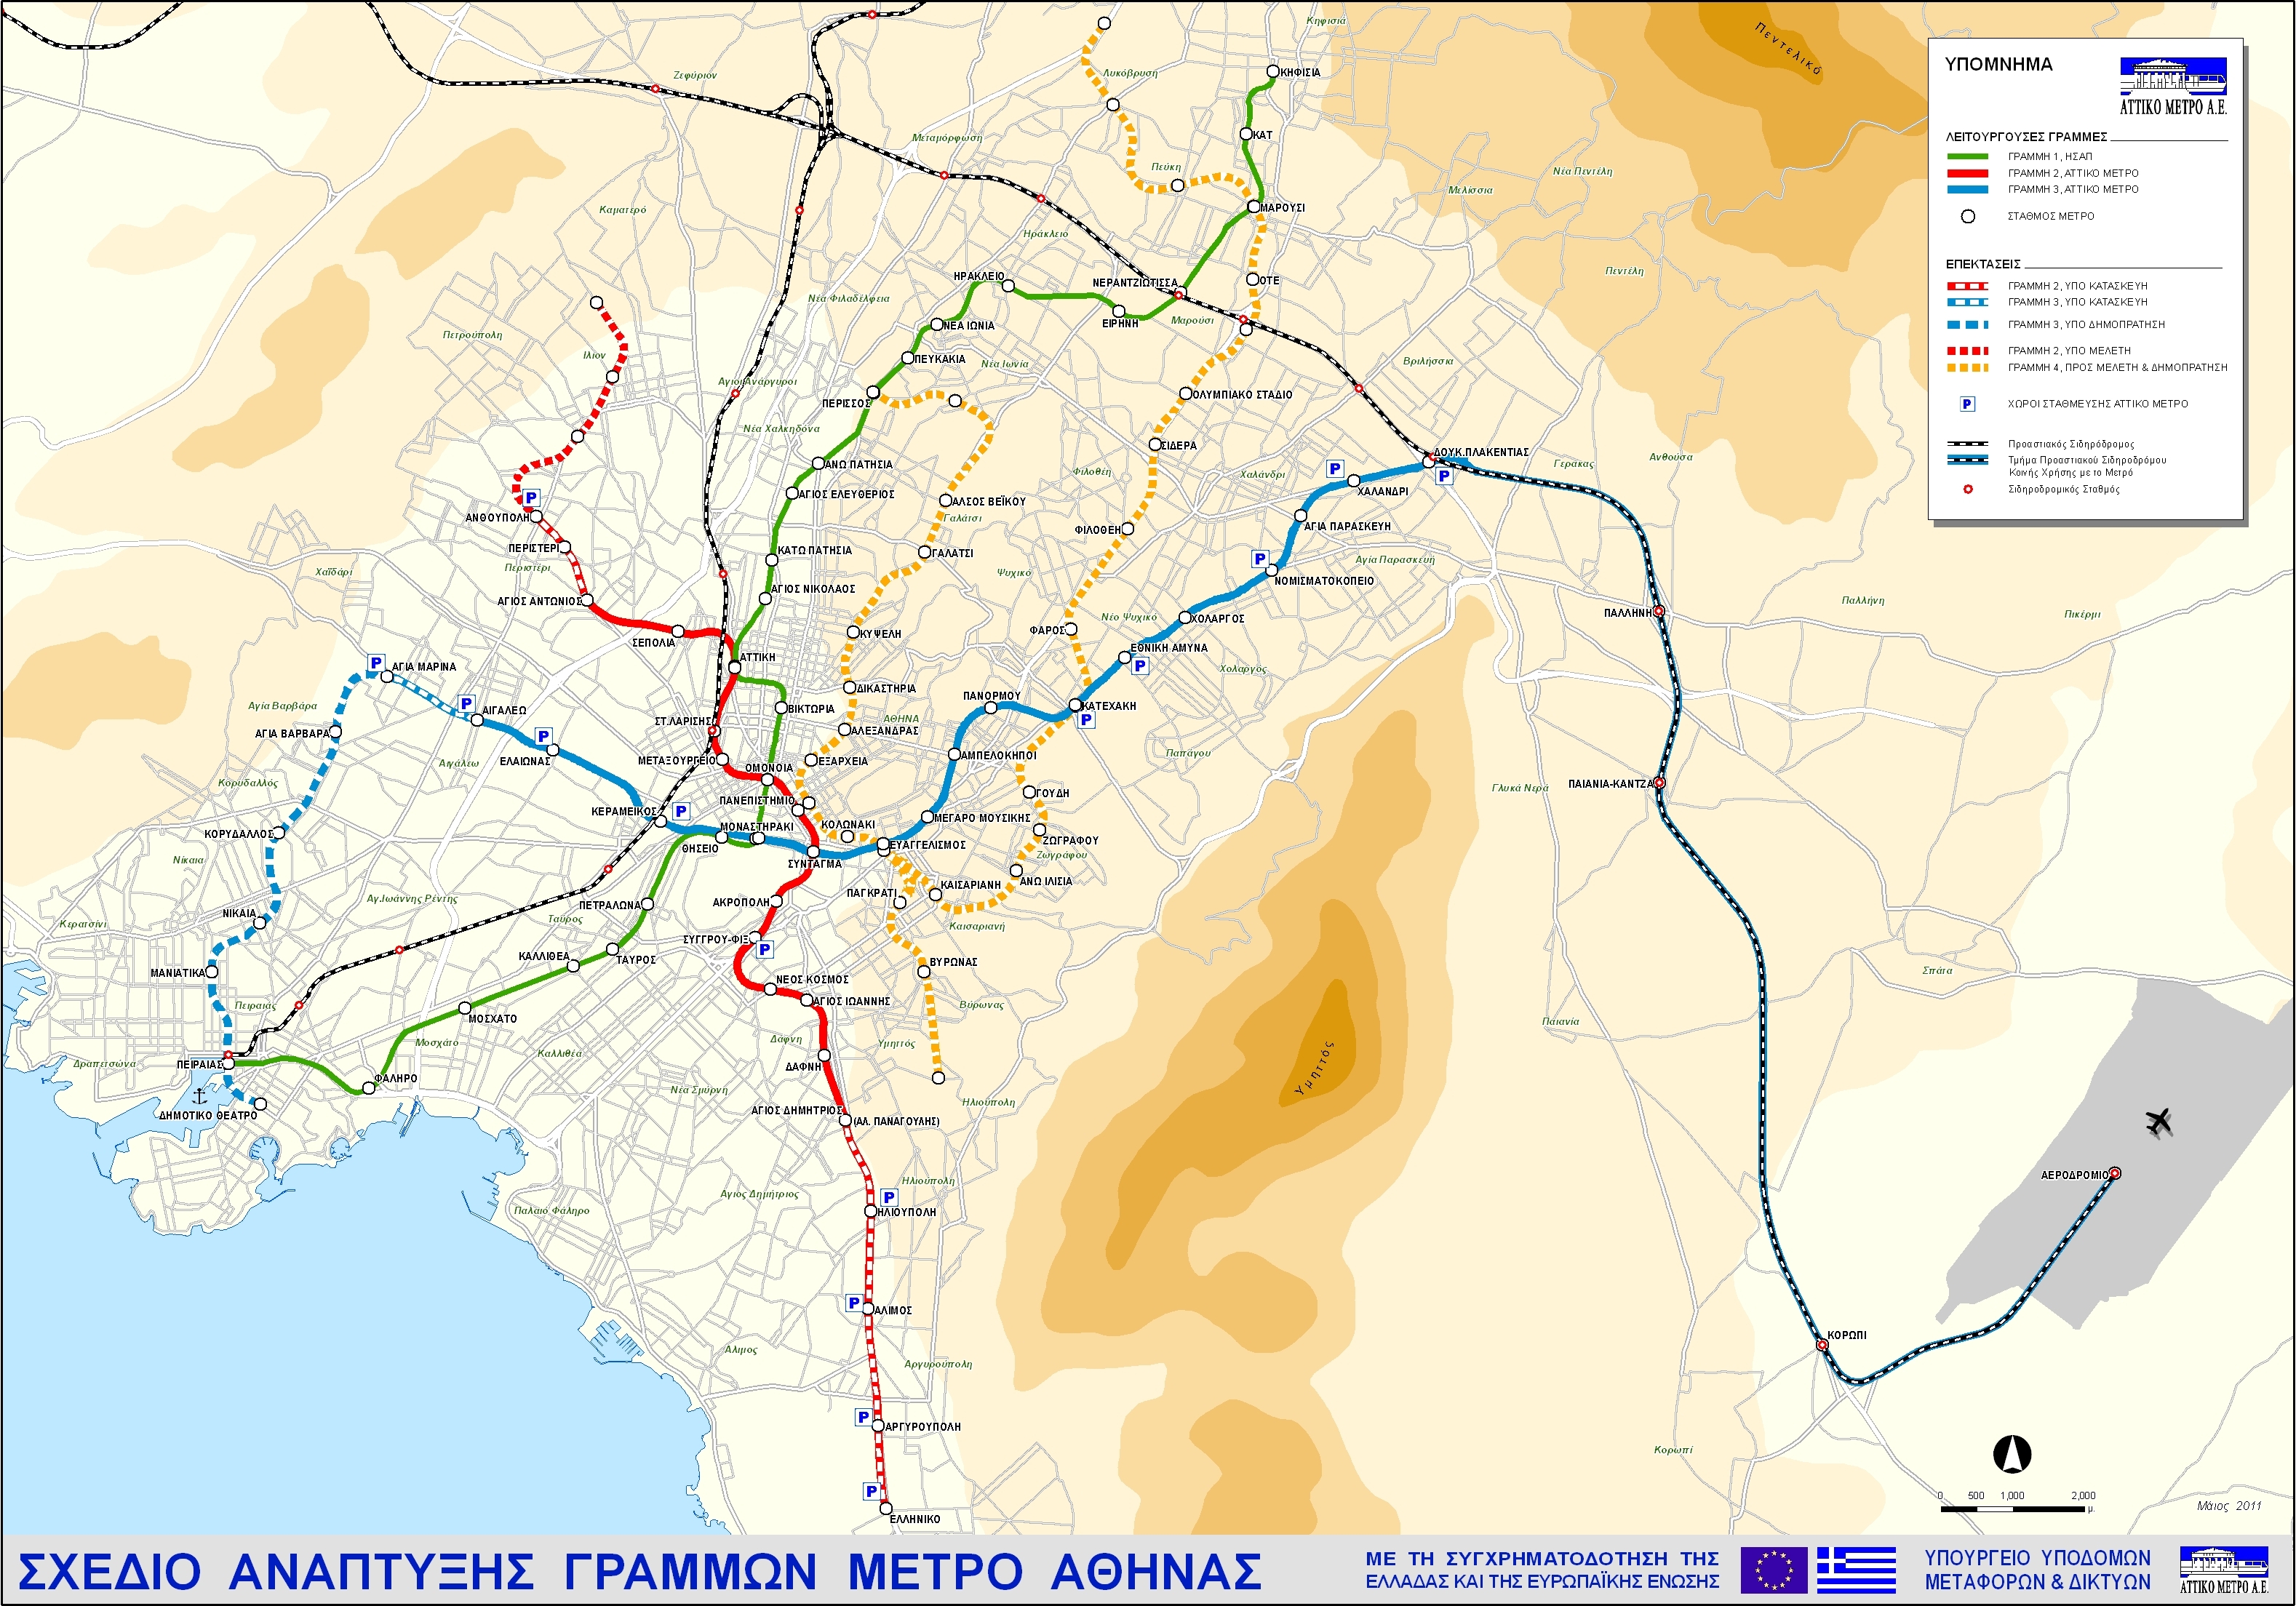 Σχέδιο ανάπτυξης γραμμών Μετρό Αθήνας, Μάιος 2011 (κλικ για μεγέθυνση) Πηγή: ΑΤΤΙΚΟ ΜΕΤΡΟ